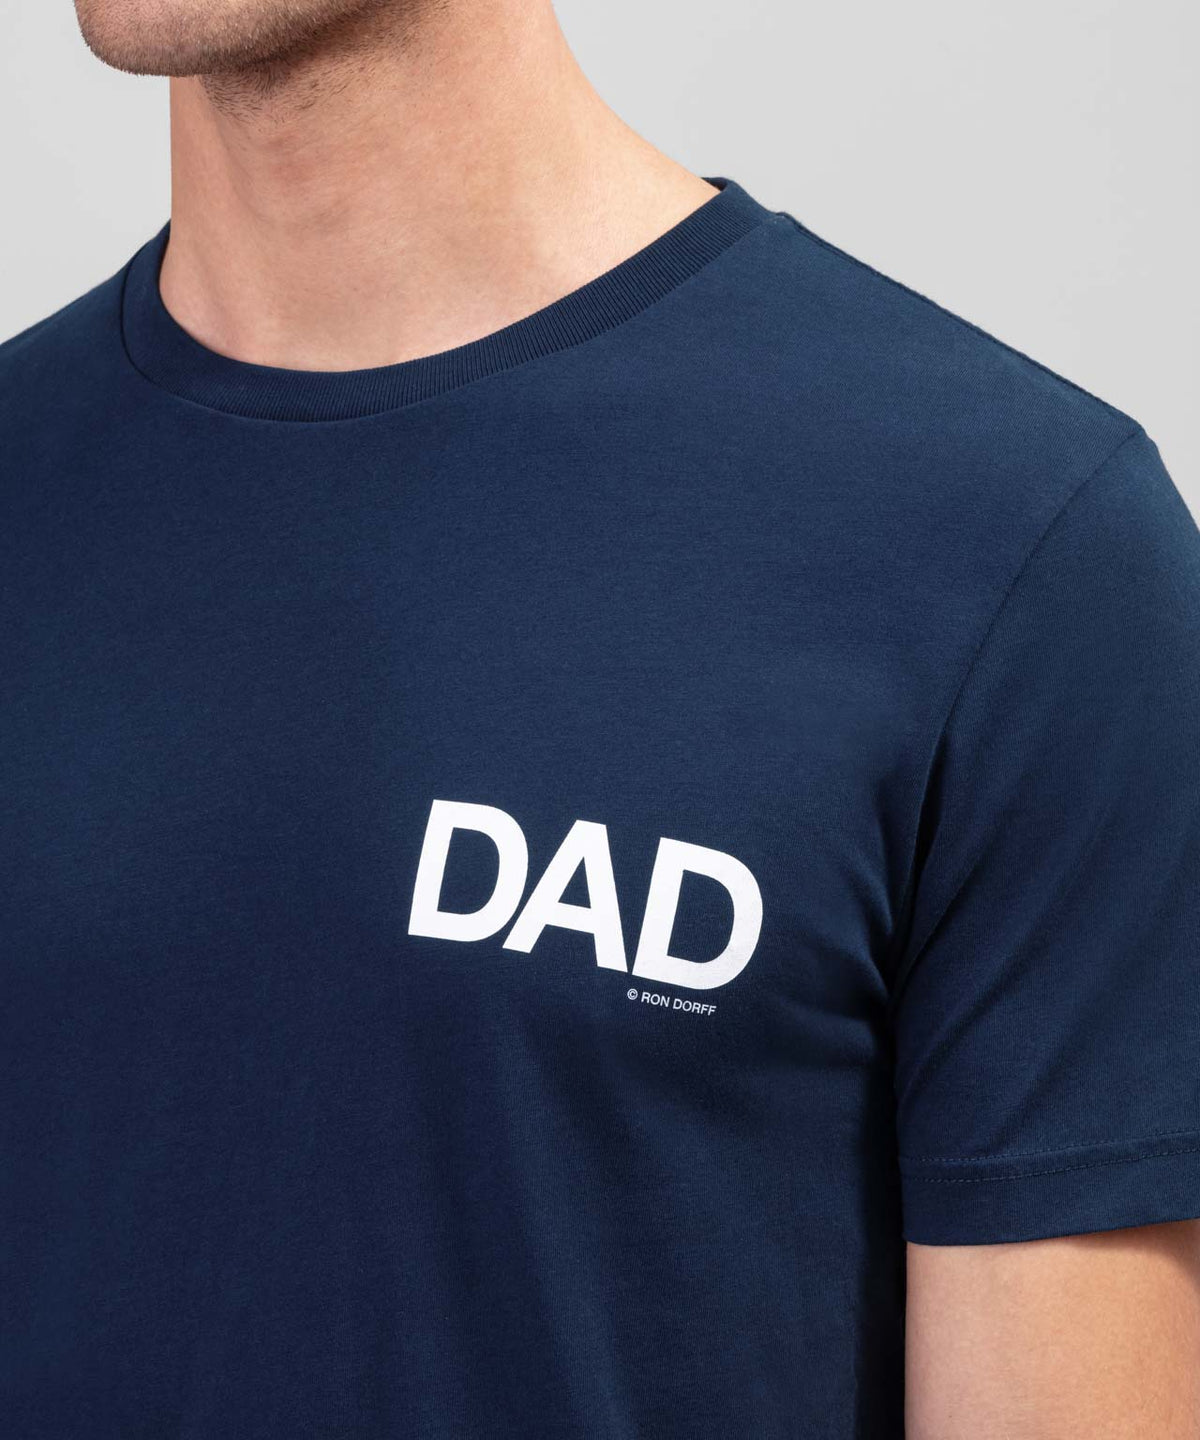 DAD Navy T-Shirt. Ron Dorff